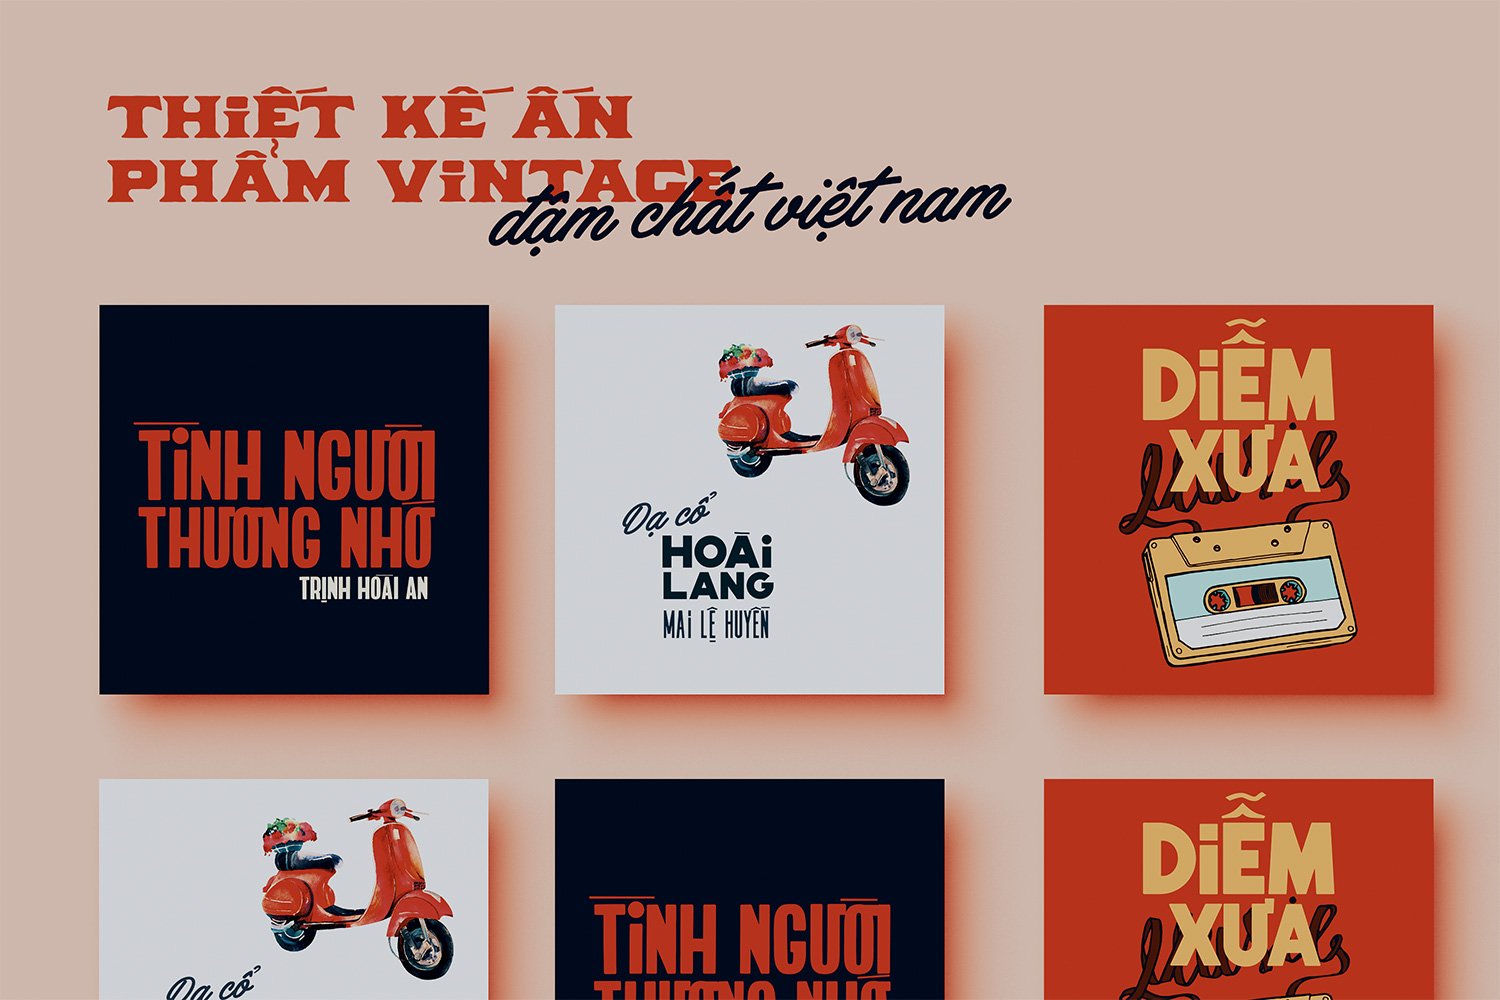 Đang cần download font chữ Việt hoá đẹp? Bạn đến đúng nơi rồi đó! Với địa chỉ download font chữ Việt hoá đẹp hiện đại và đa dạng nhất, bạn sẽ có thể lựa chọn cho mình những bộ font chữ ưng ý nhất, phù hợp với nhu cầu và sở thích của bạn. Tất cả đều miễn phí và dễ dàng sử dụng.